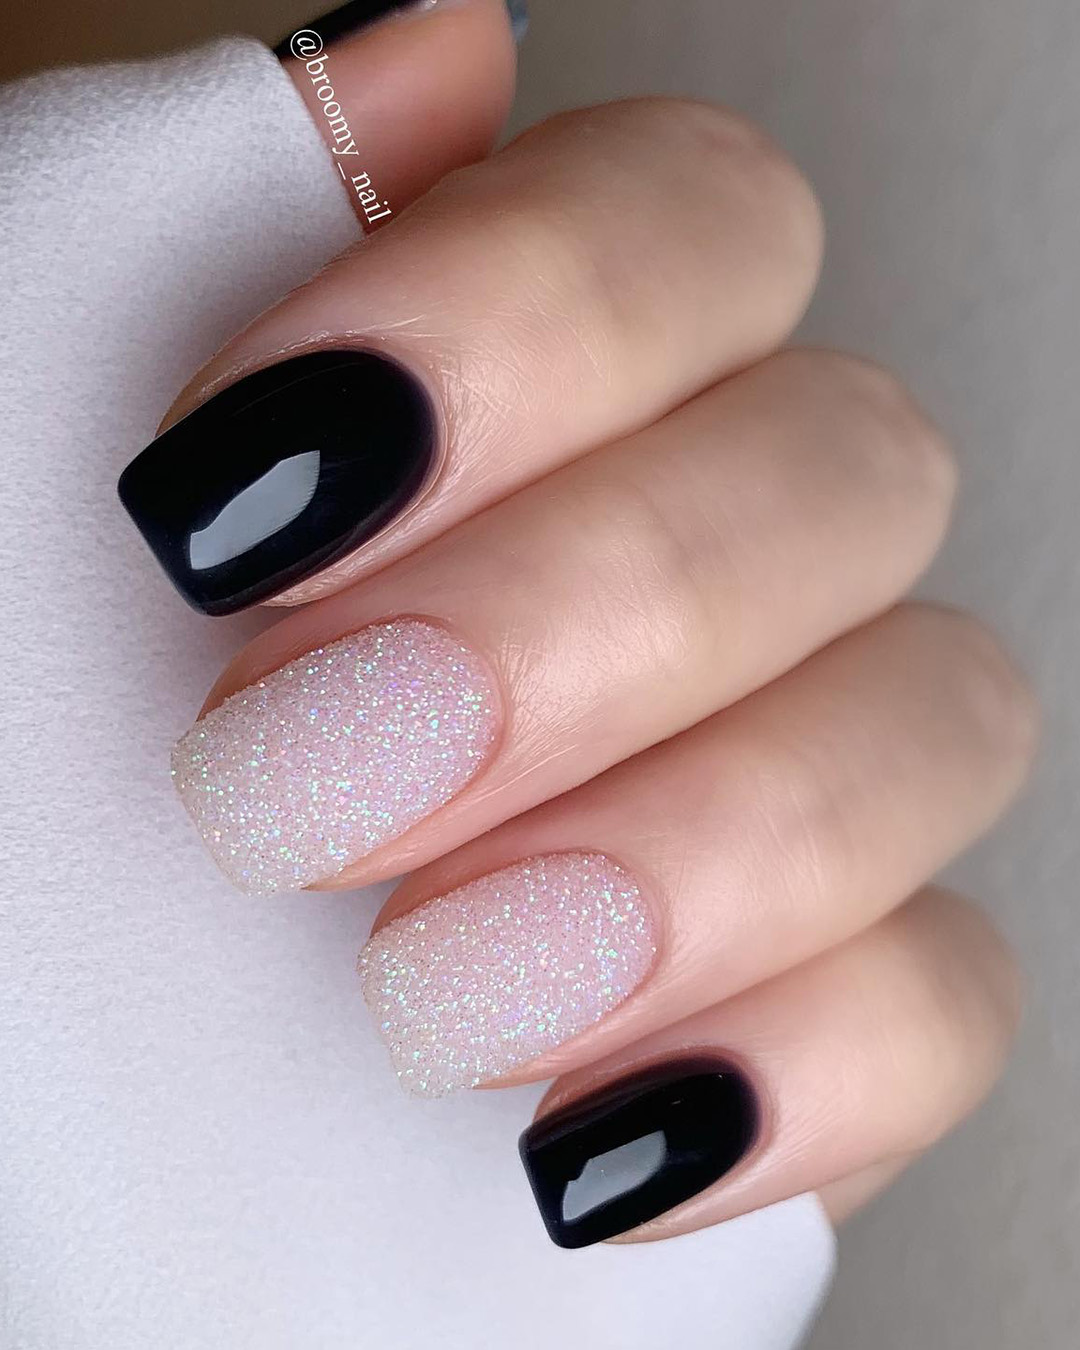 black wedding nails with gloss powder broomy_nail